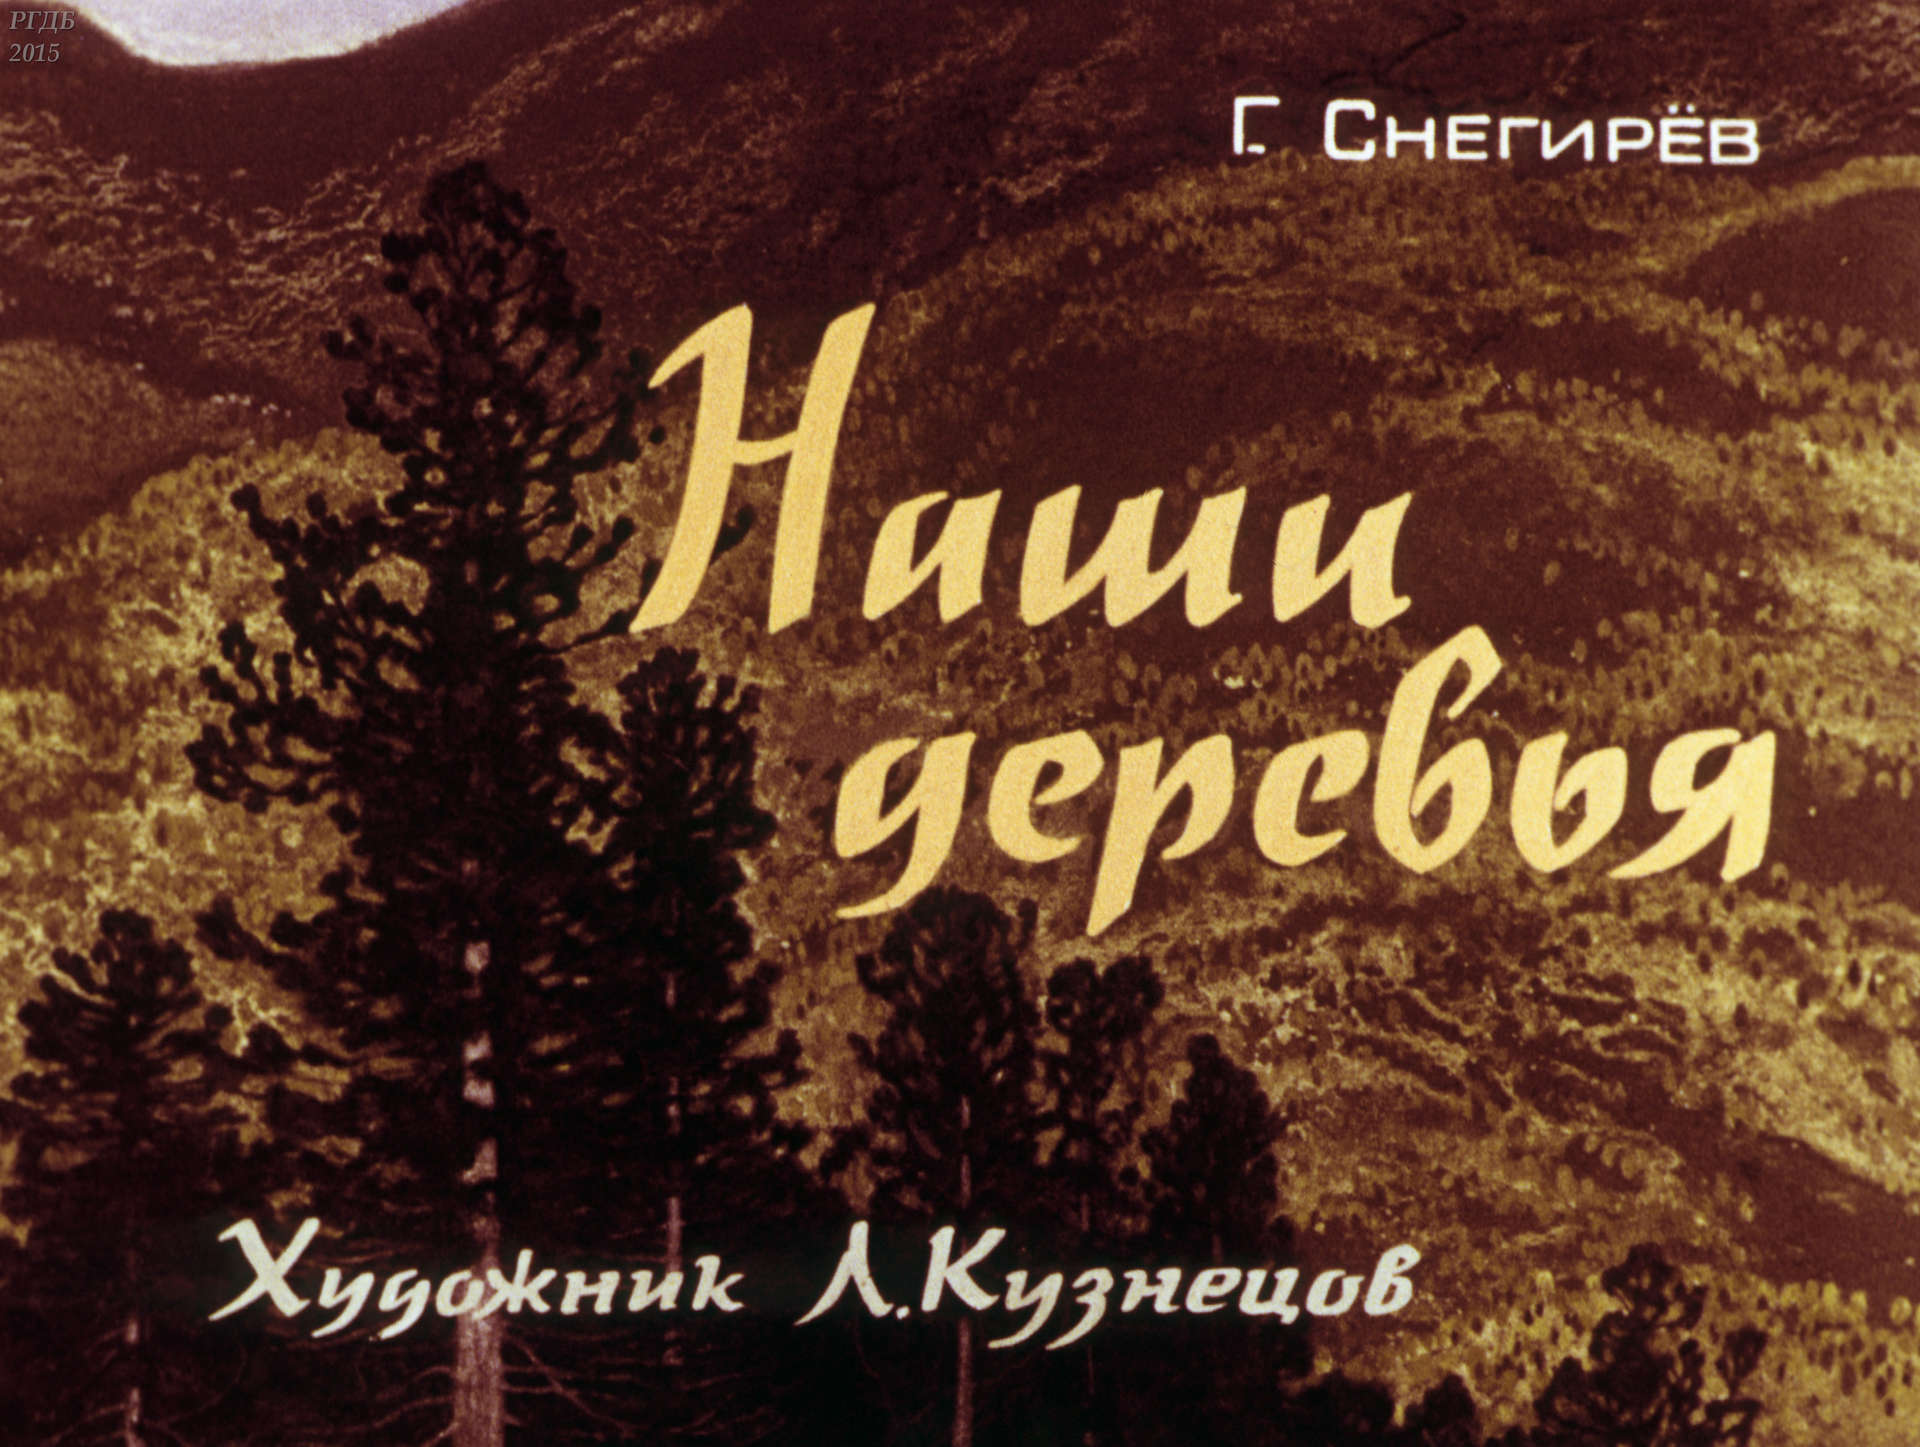 Снегирев Геннадий Яковлевич - Наши деревья - 1980